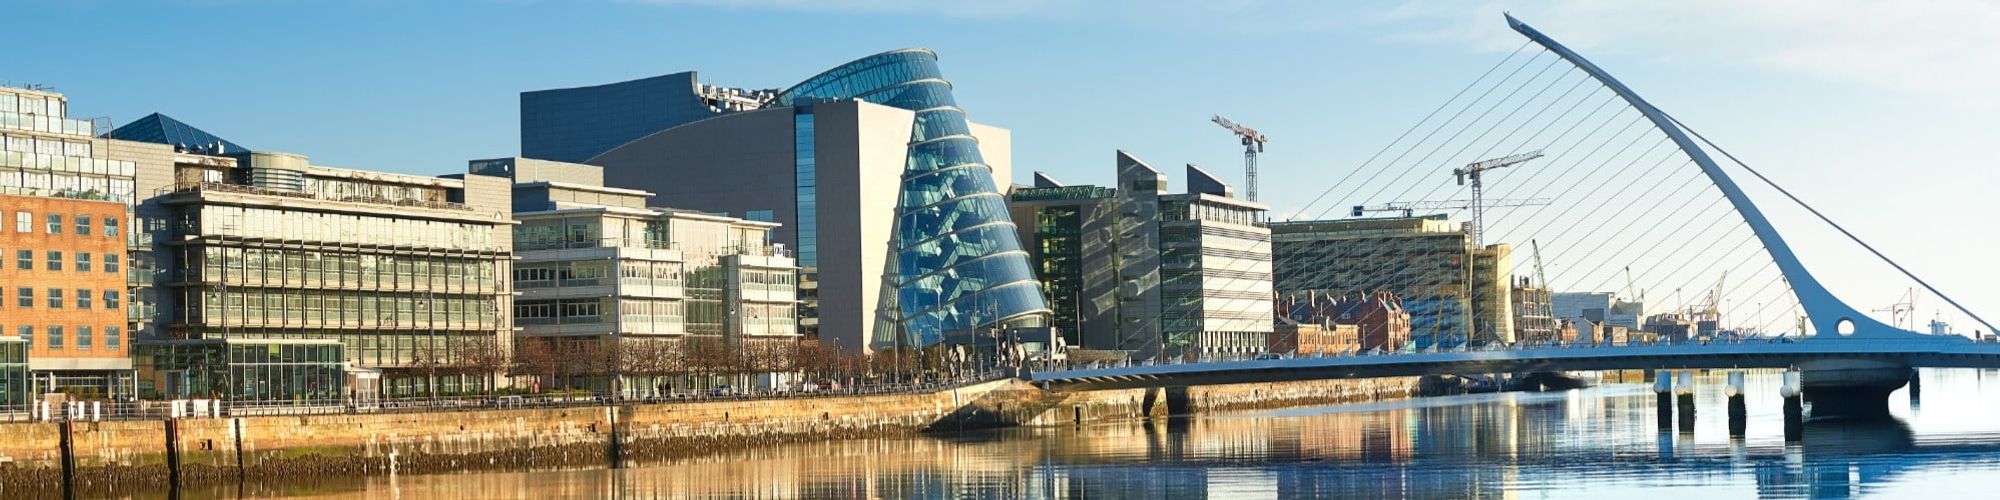 Dublin Irelands IFSC central business district, commercial hub, city centre